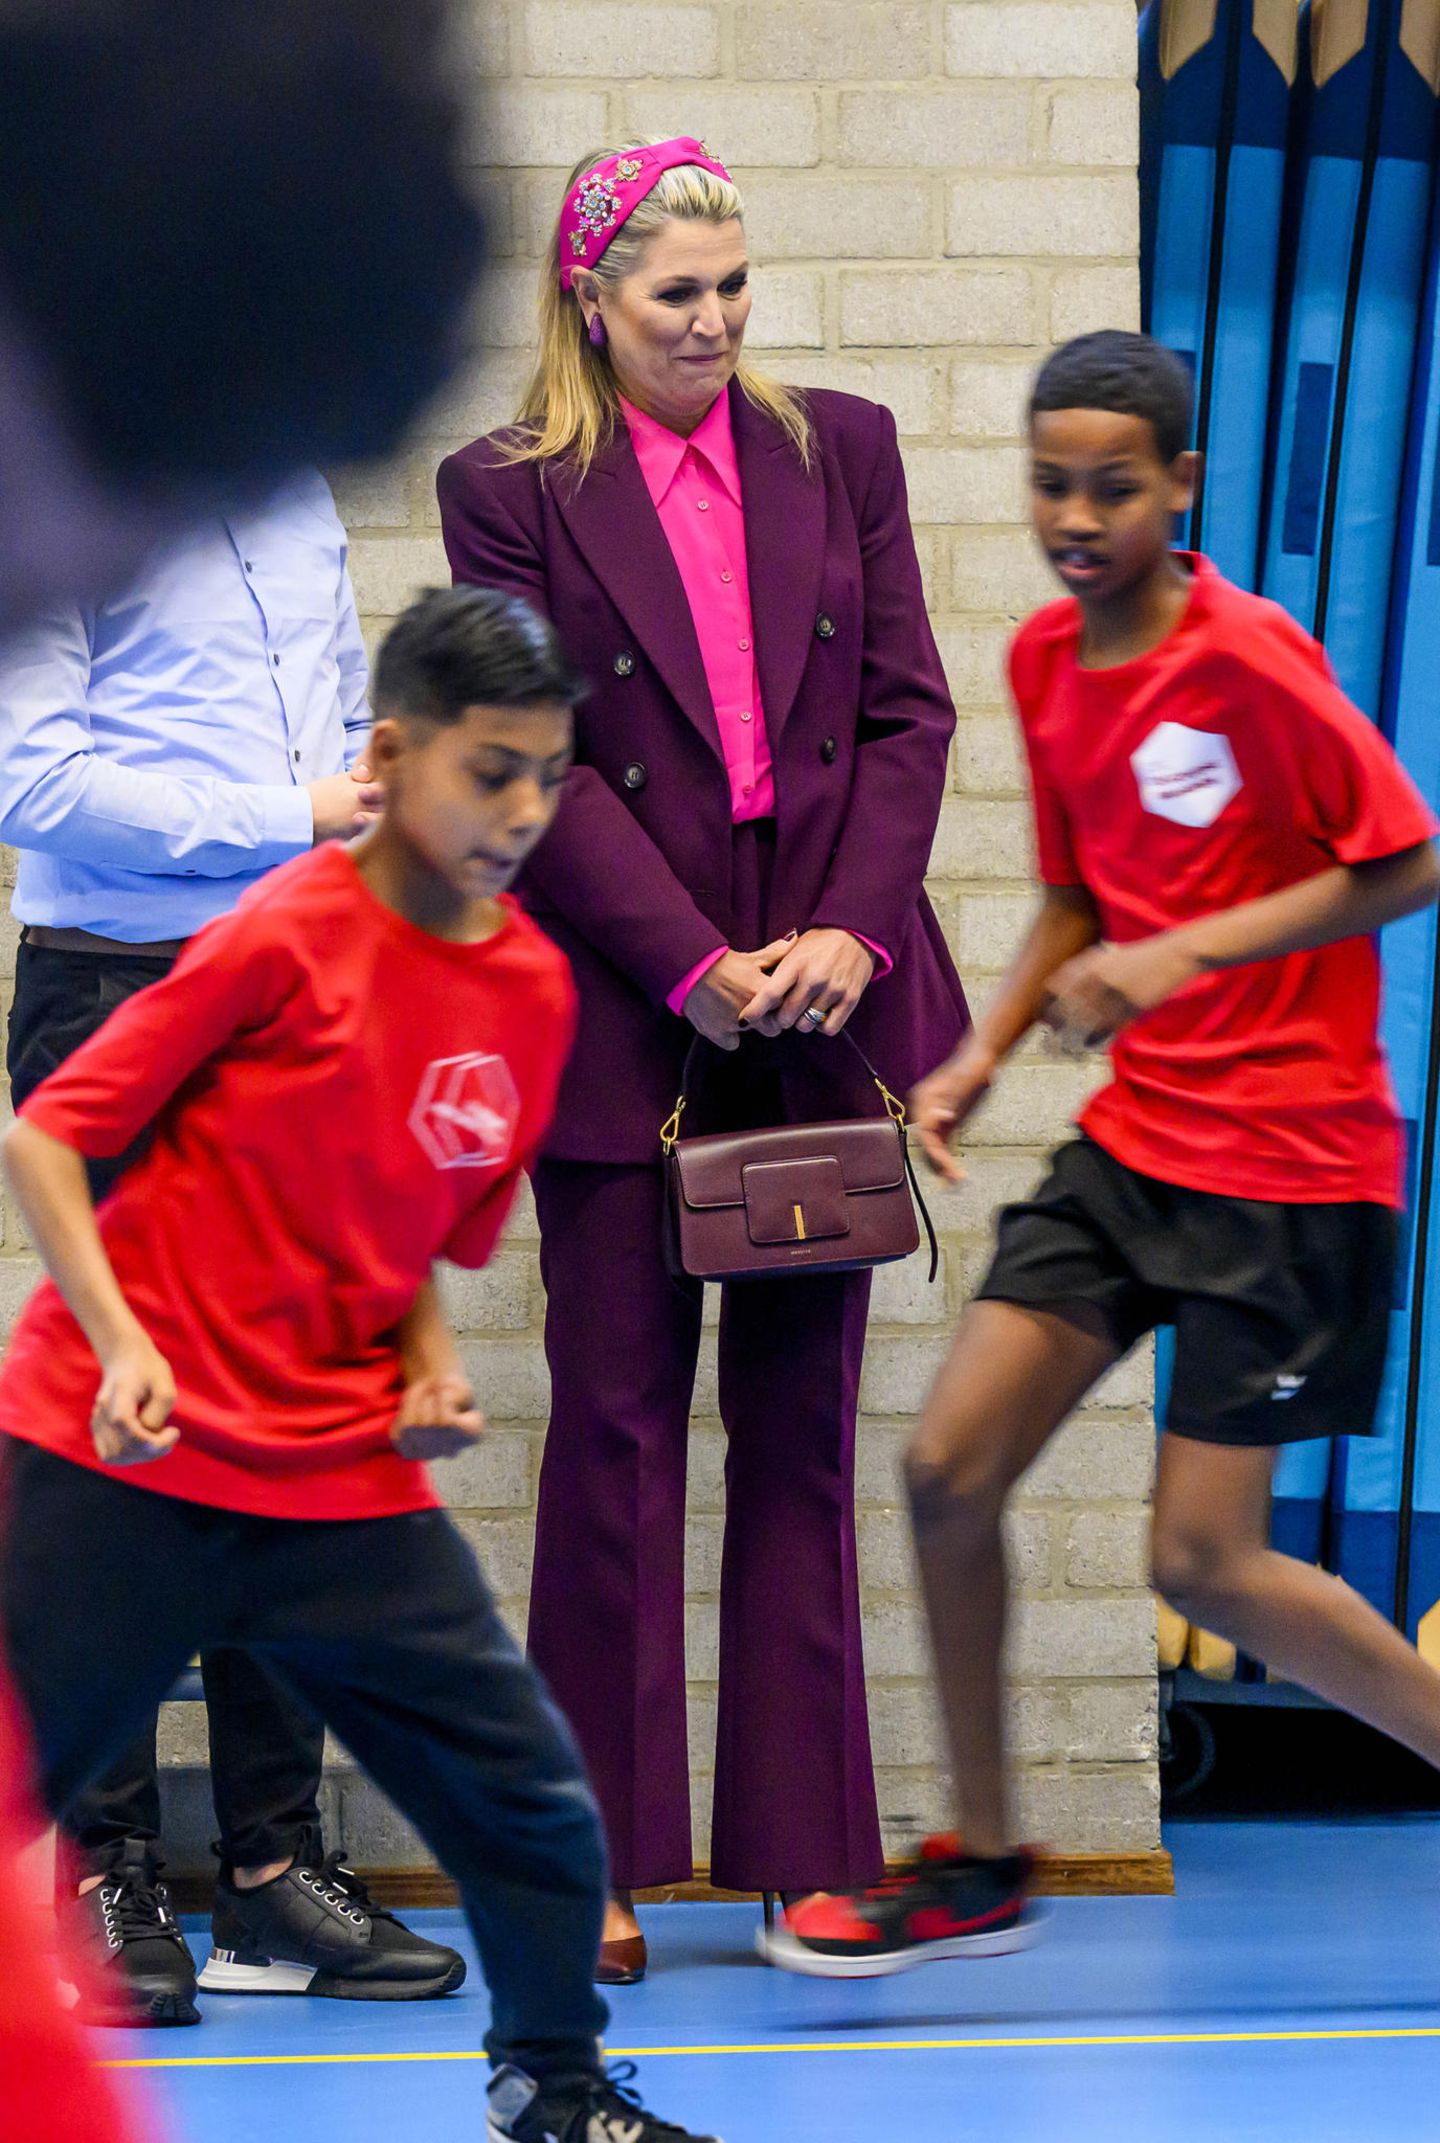 Schon am Vortag setzte die Königin bei ihrem Besuch der VMBO Schule Goudse Waarden in Gouda auf kräftige Farben. Den Zara-Anzug in Aubergine kombiniert sie gekonnt mit einem pinkfarbenen Hemd, und auch die Accessoires passen farblich toll zum royalen Look, besonders das verspielte Haarband von NamJosh.